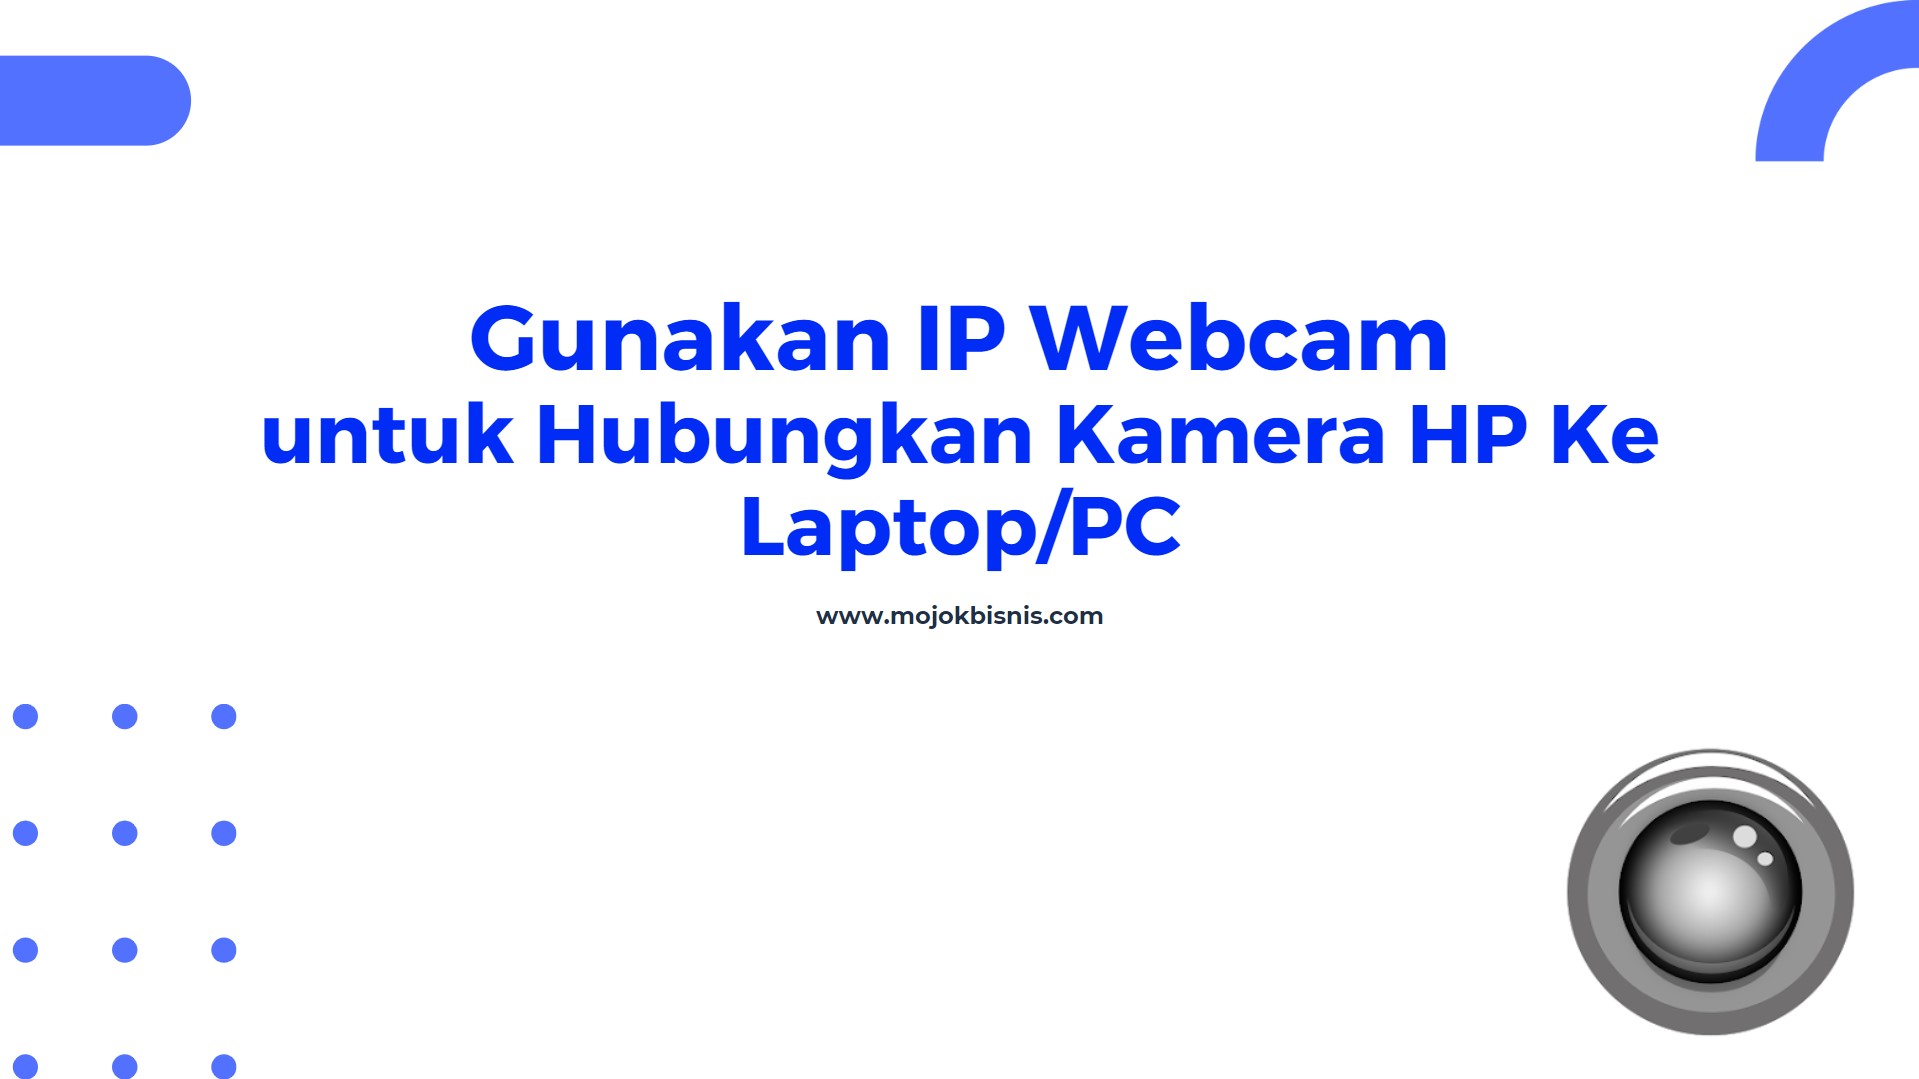 2. Aplikasi IP Webcam